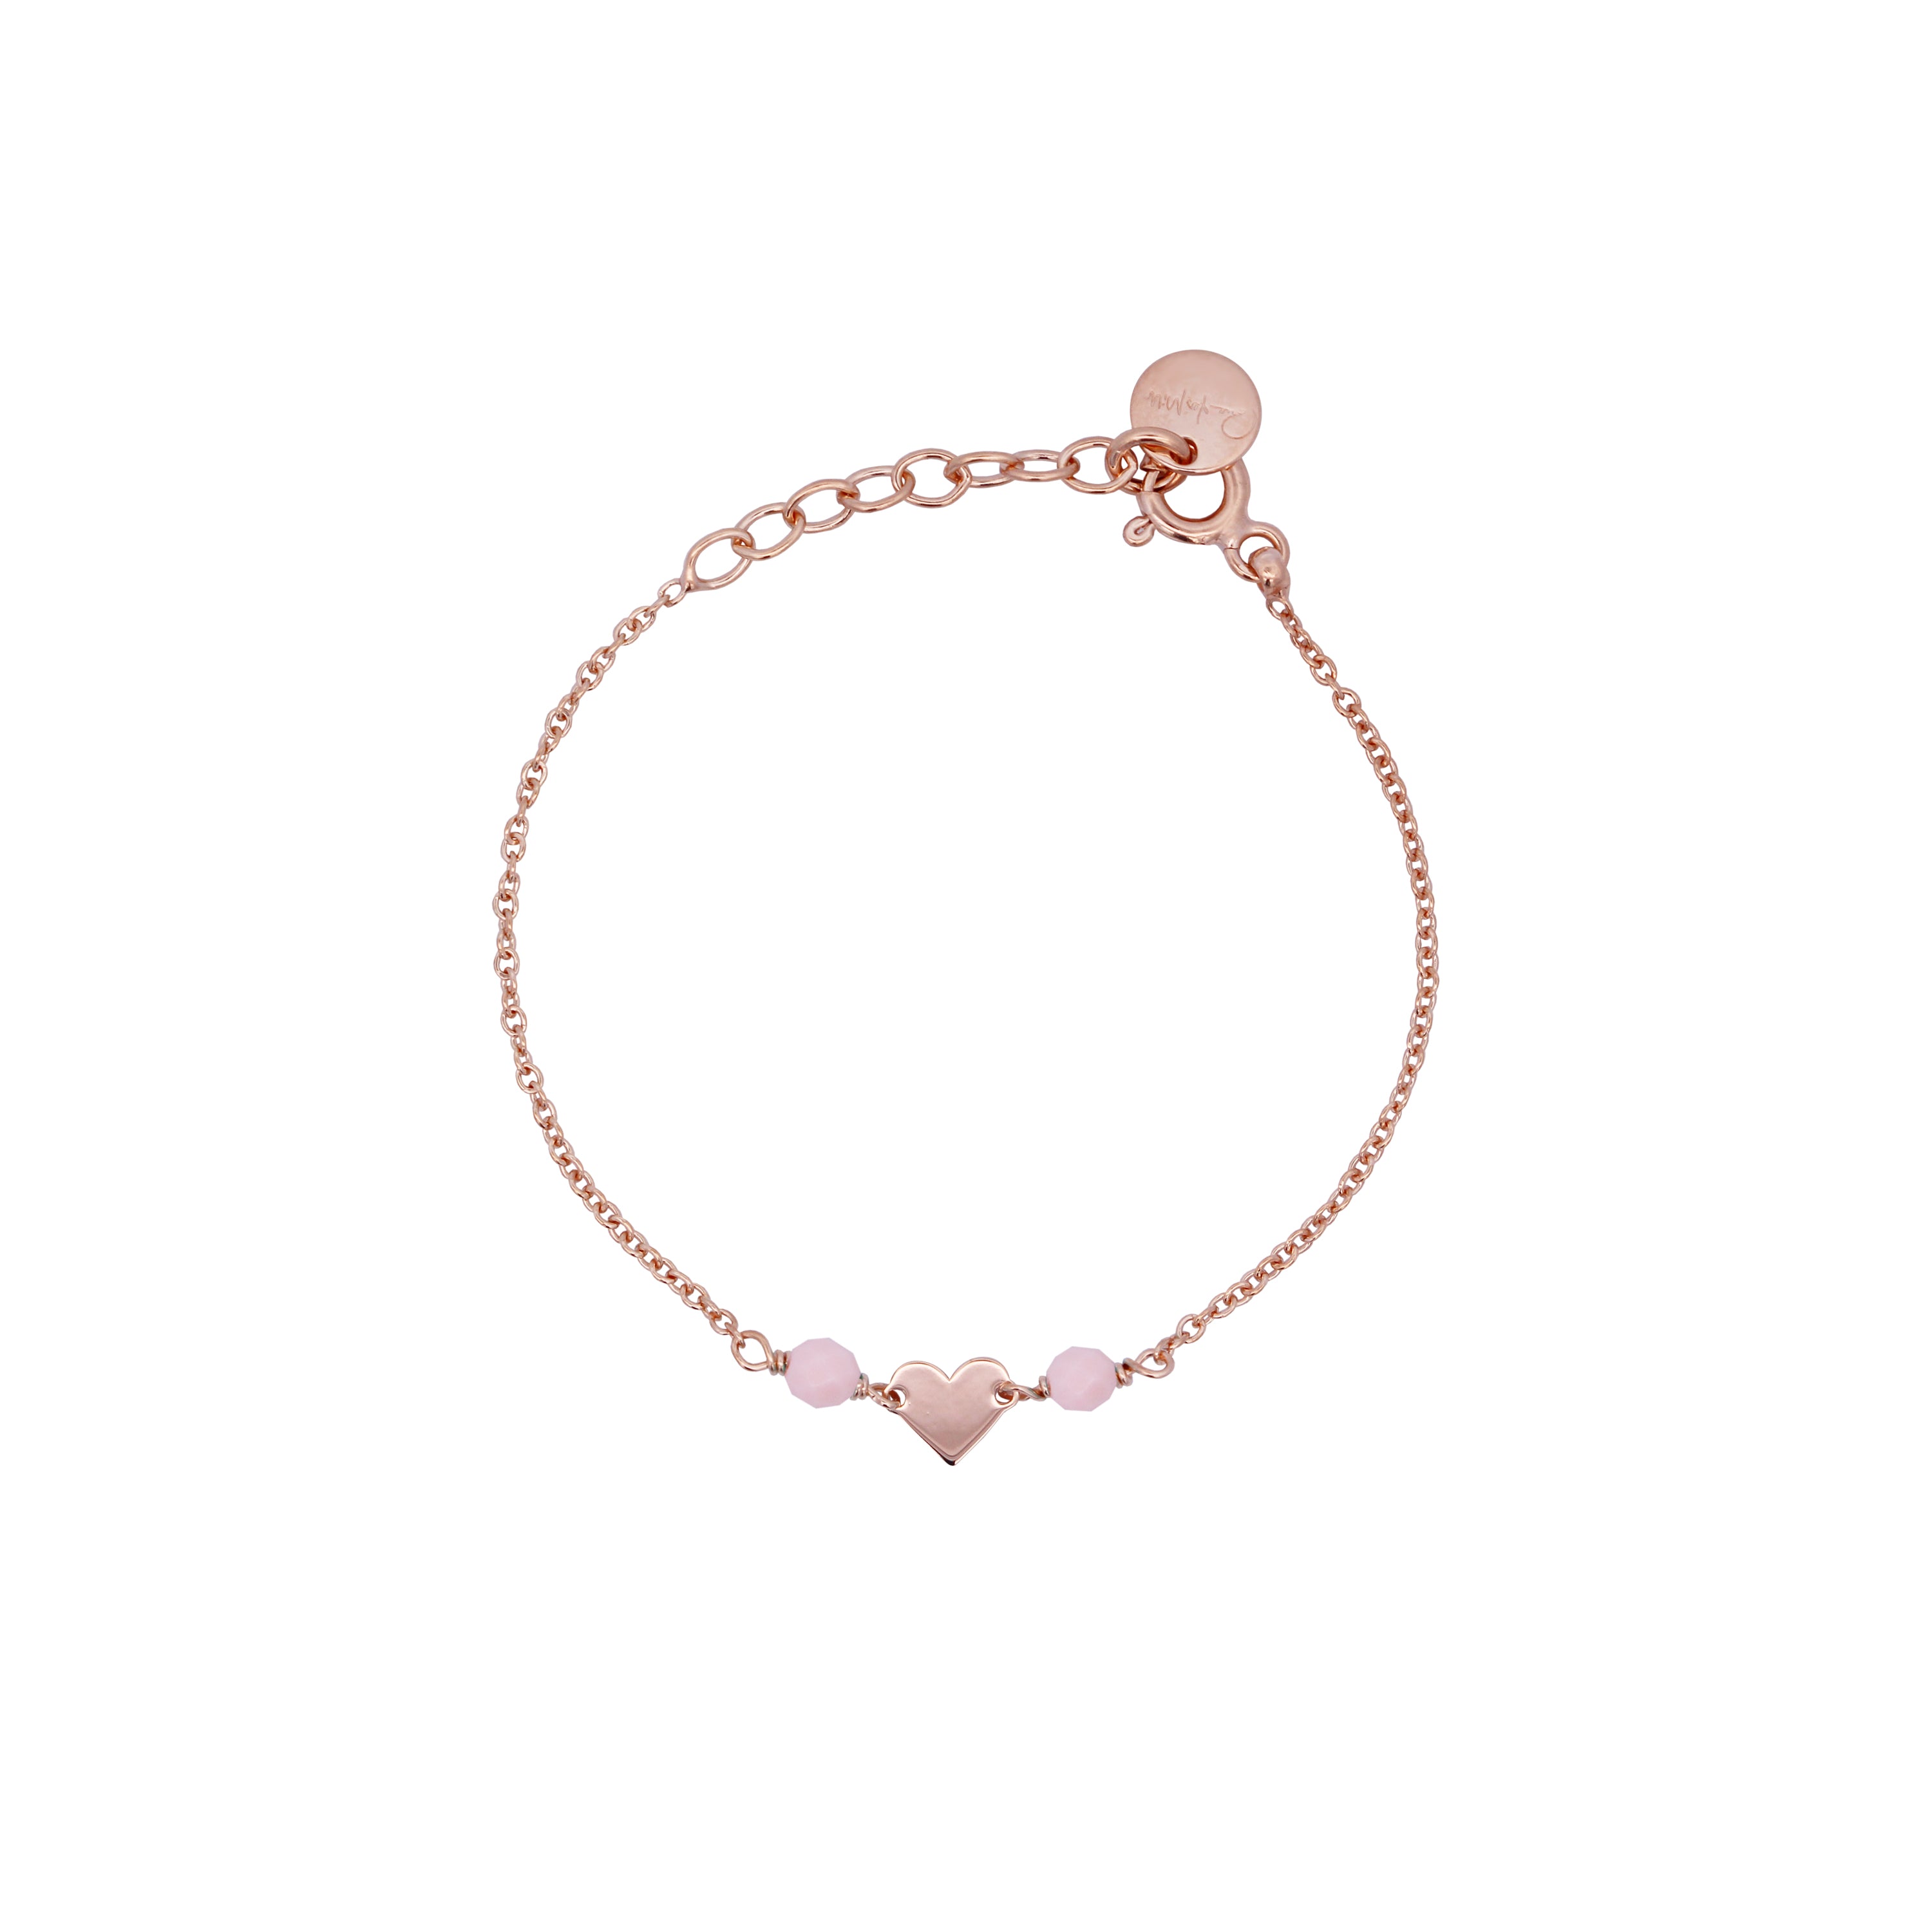 Bracelets - Pink Stones Heart Chain Bracelet Child - Io&Ro - 1 | Rue des Mille